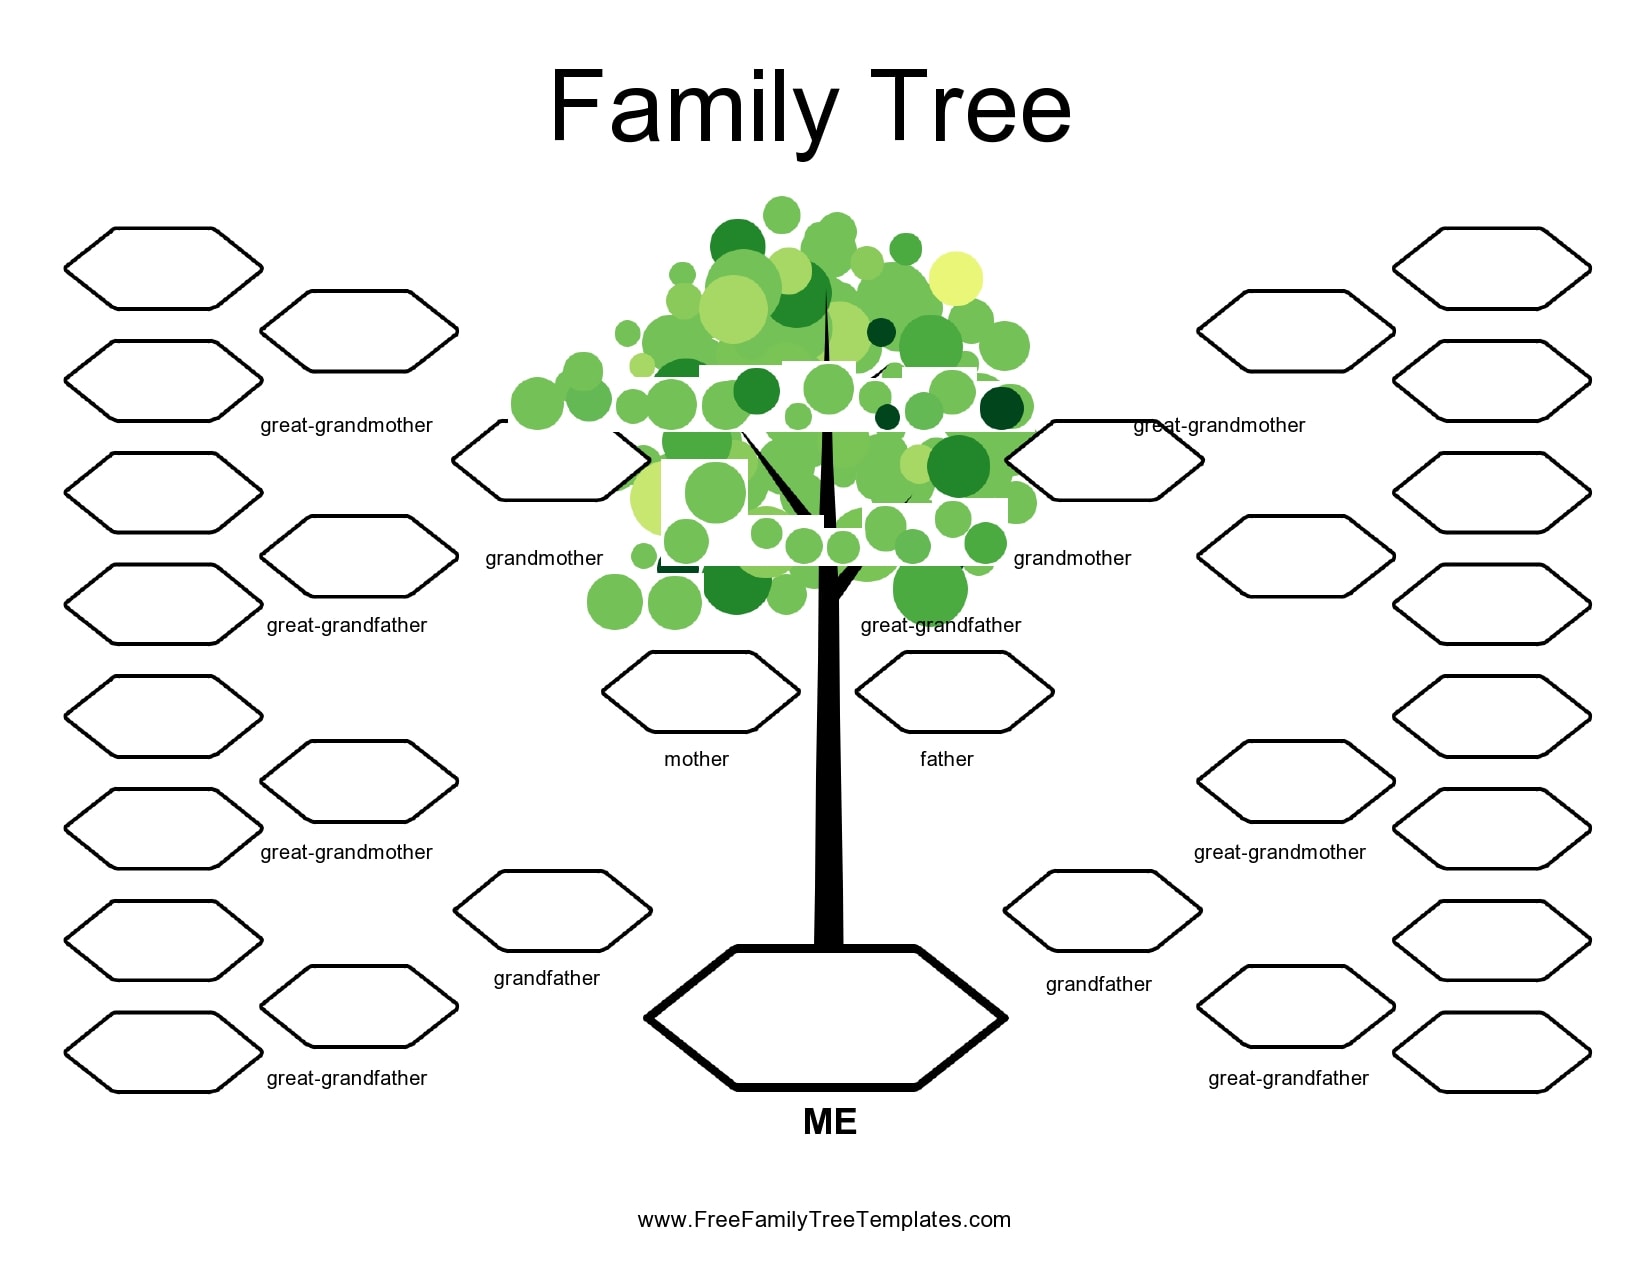 free-printable-family-tree-diagram-peatix